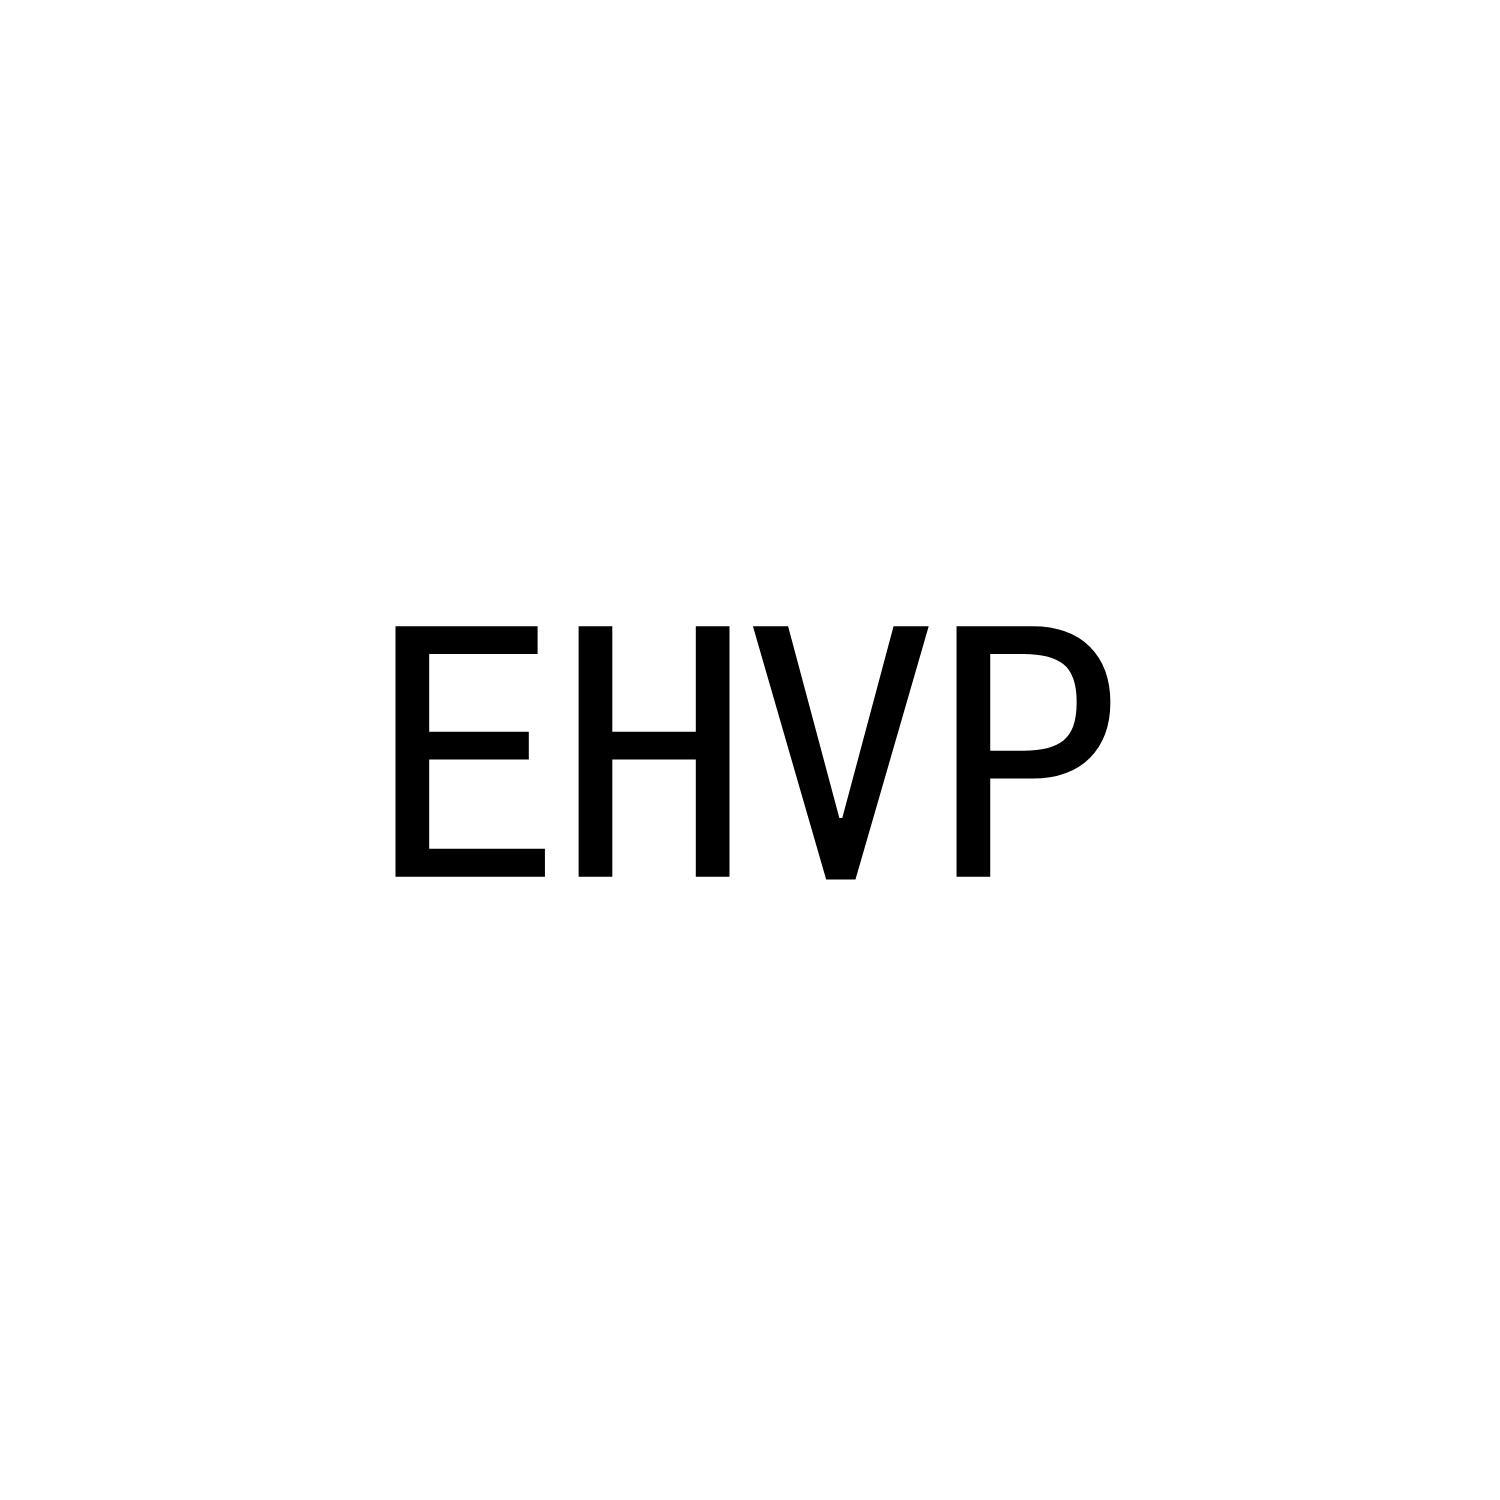 EHVP